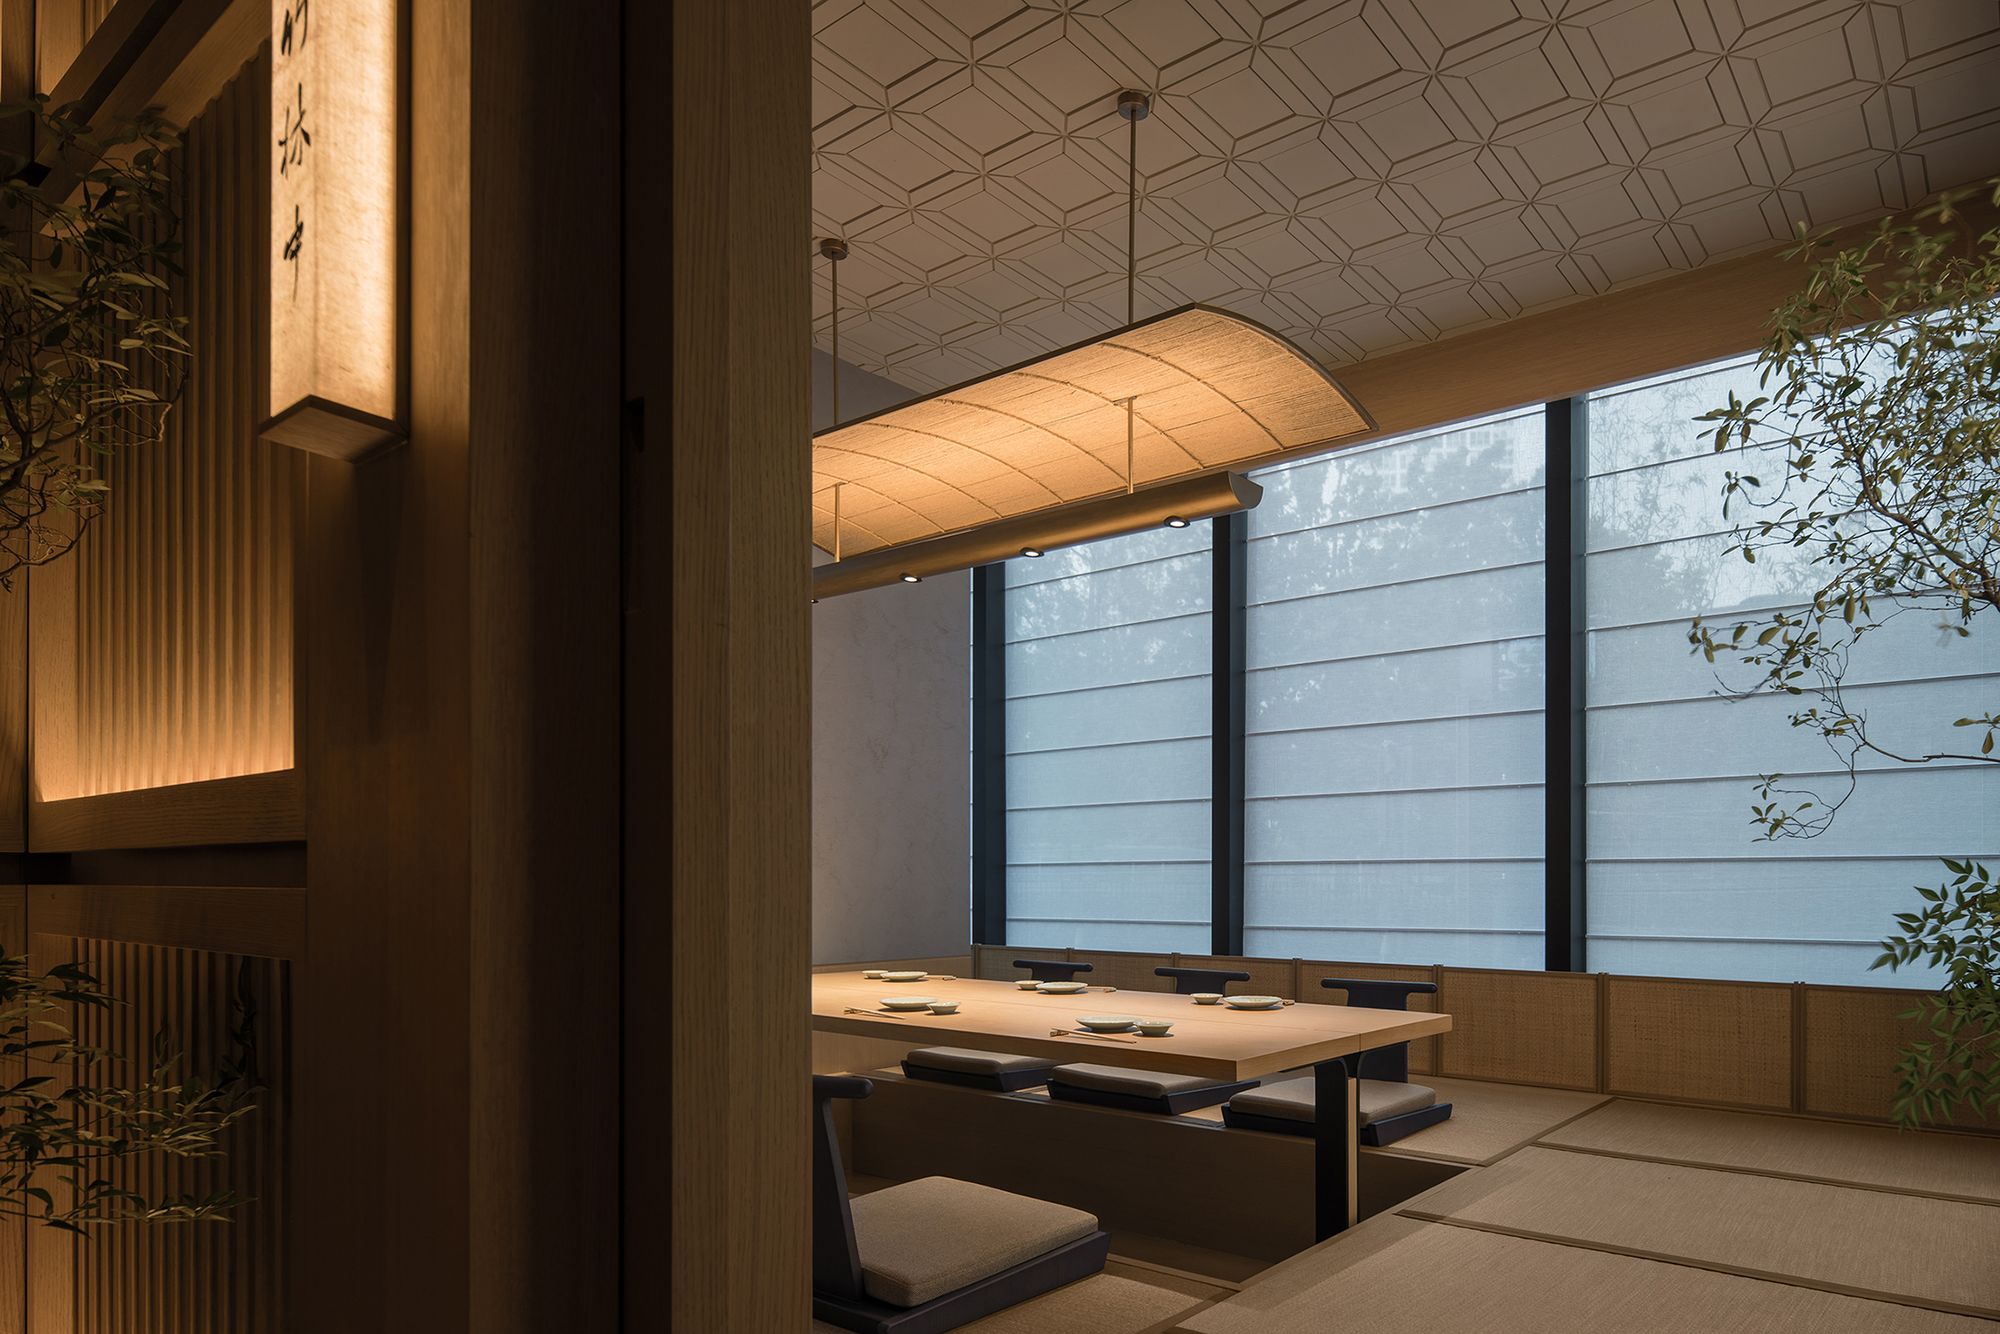 图片[5]|Aumann日本料理餐厅|ART-Arrakis | 建筑室内设计的创新与灵感